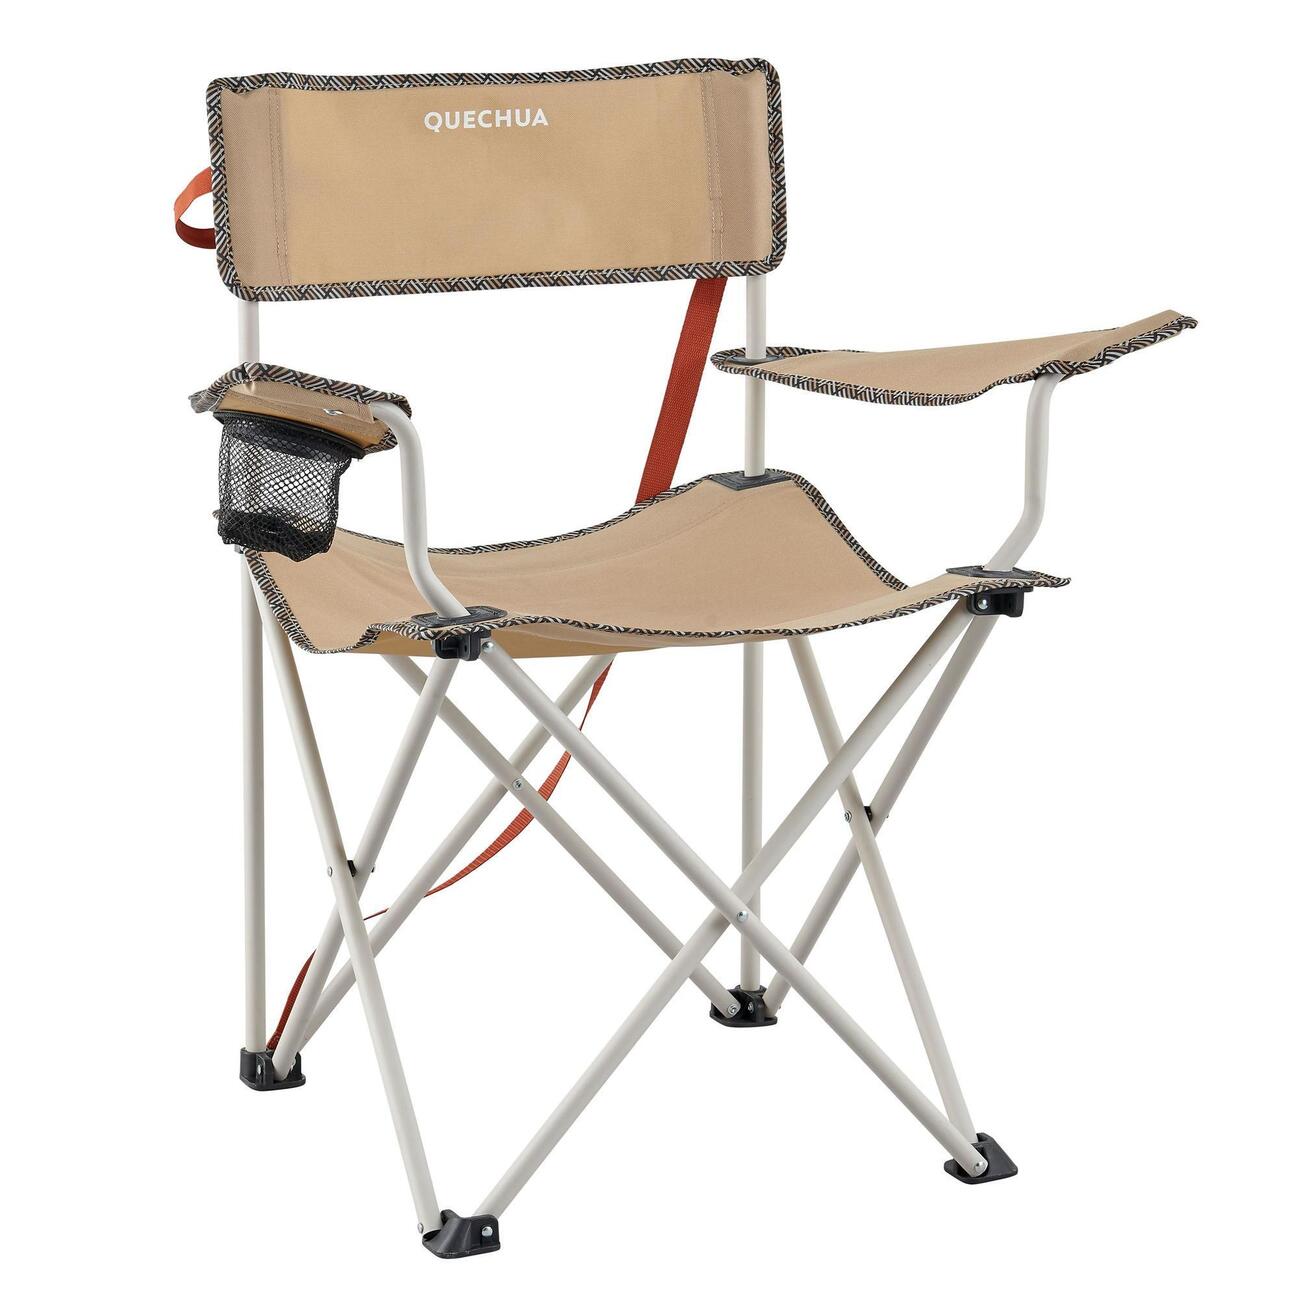 Productos más vendidos Decathlon: silla plegable - Parque Comercial Alavera